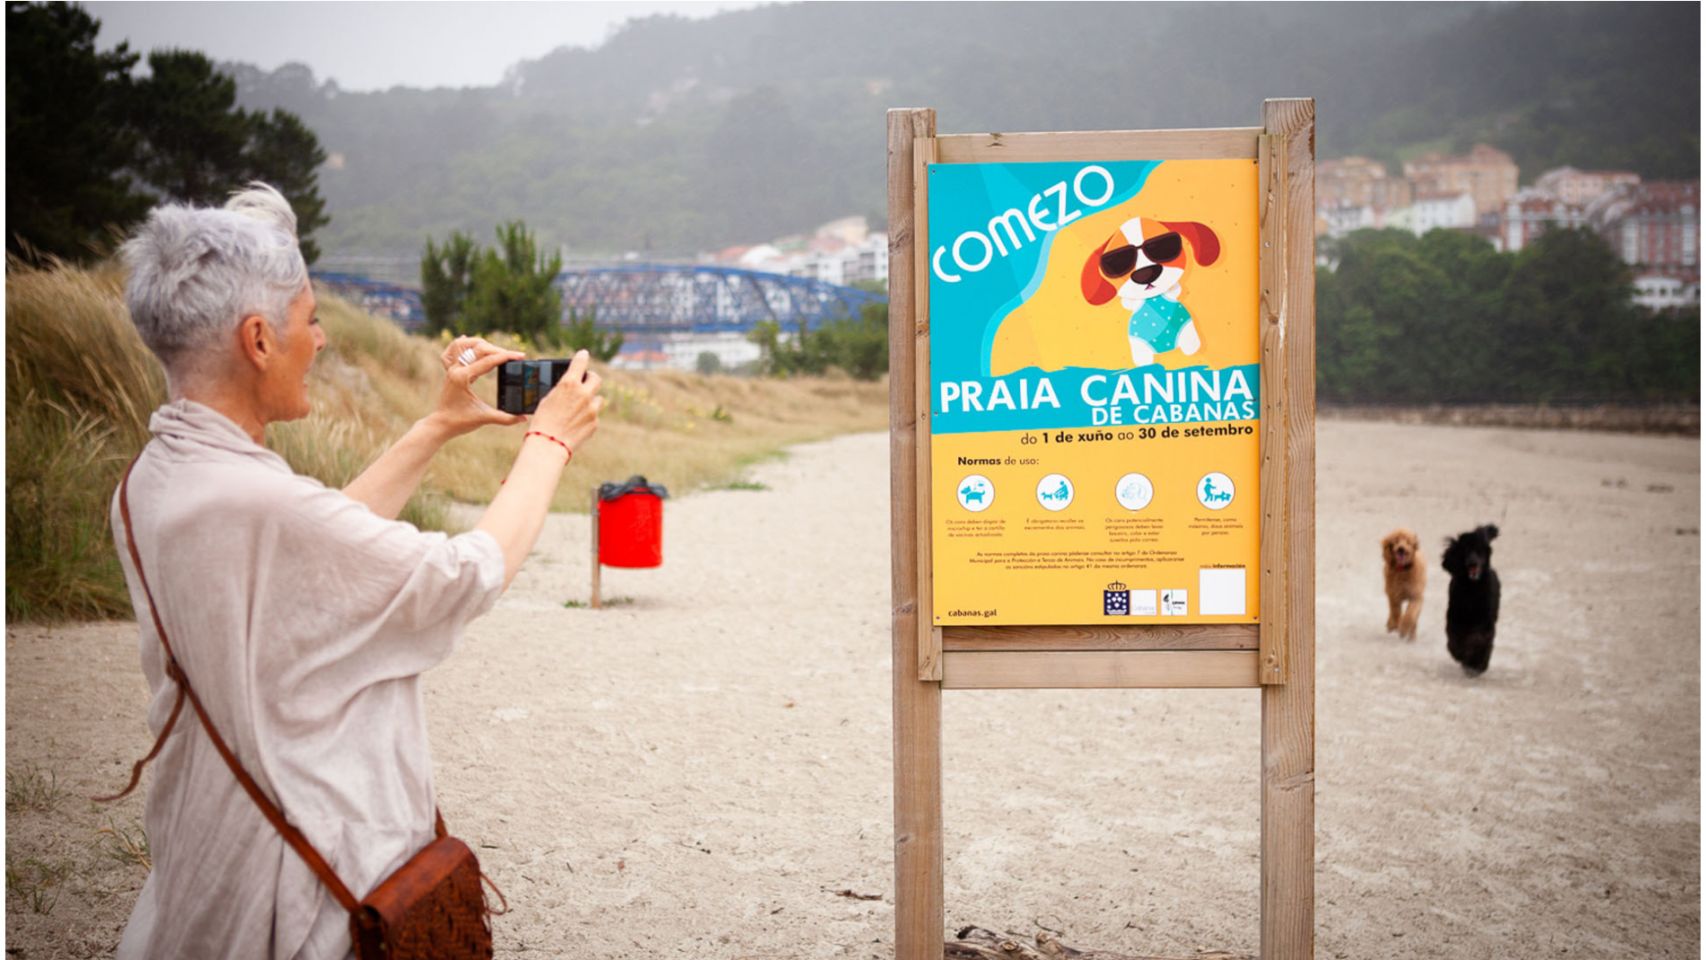 Una mujer fotografía el cartel de la playa canina de Cabanas